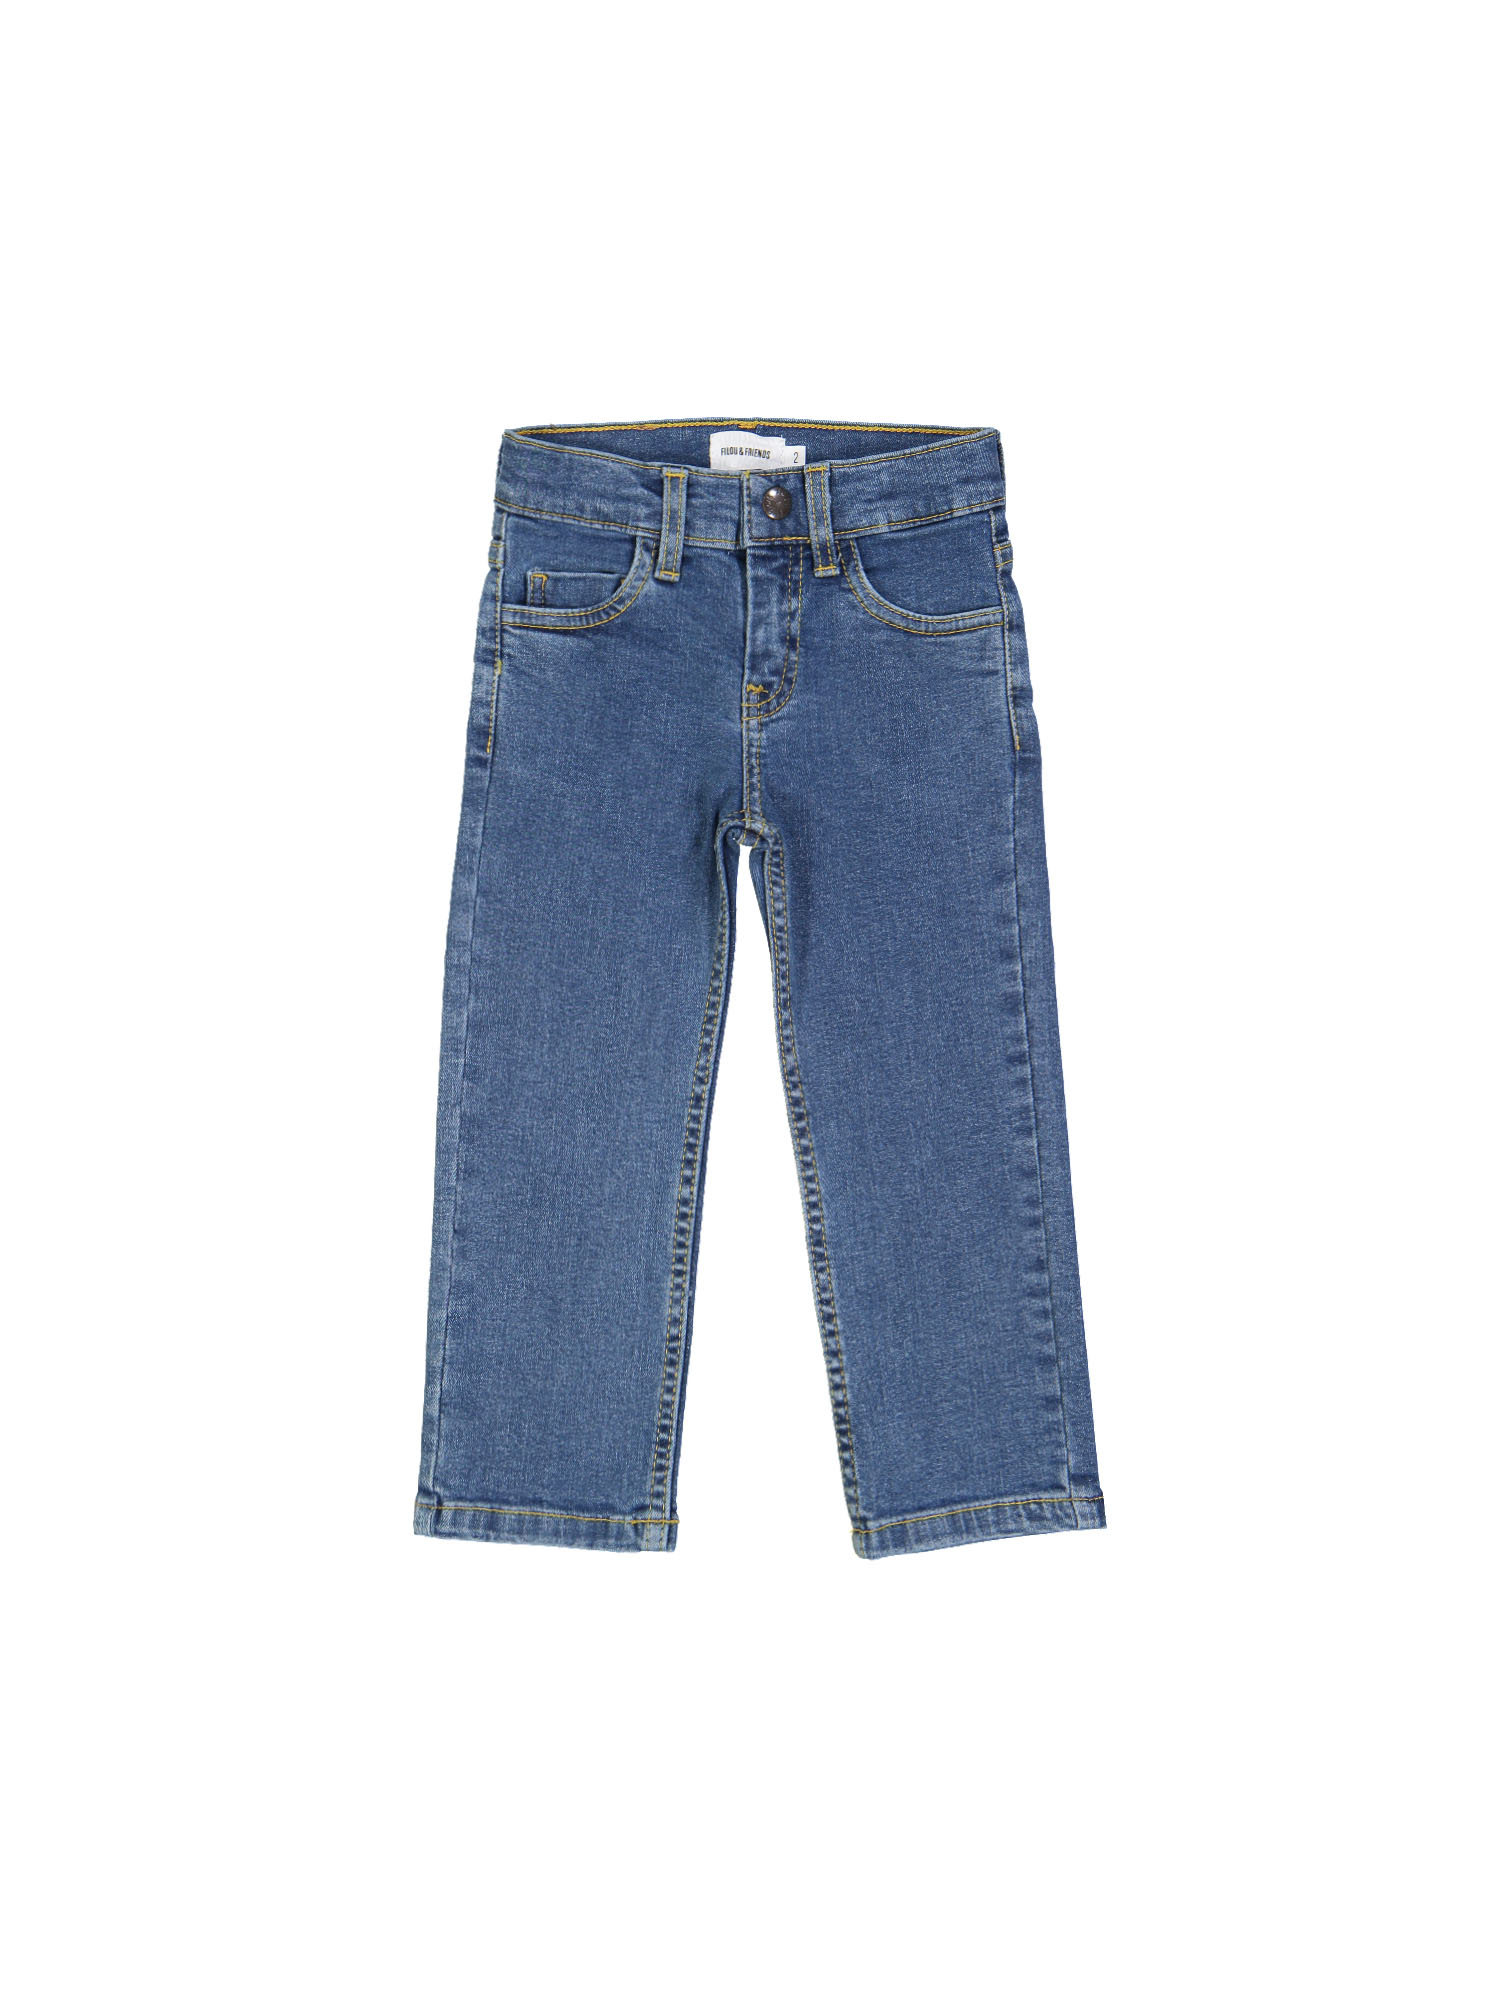 jeans regular bleach blauw rits 09j